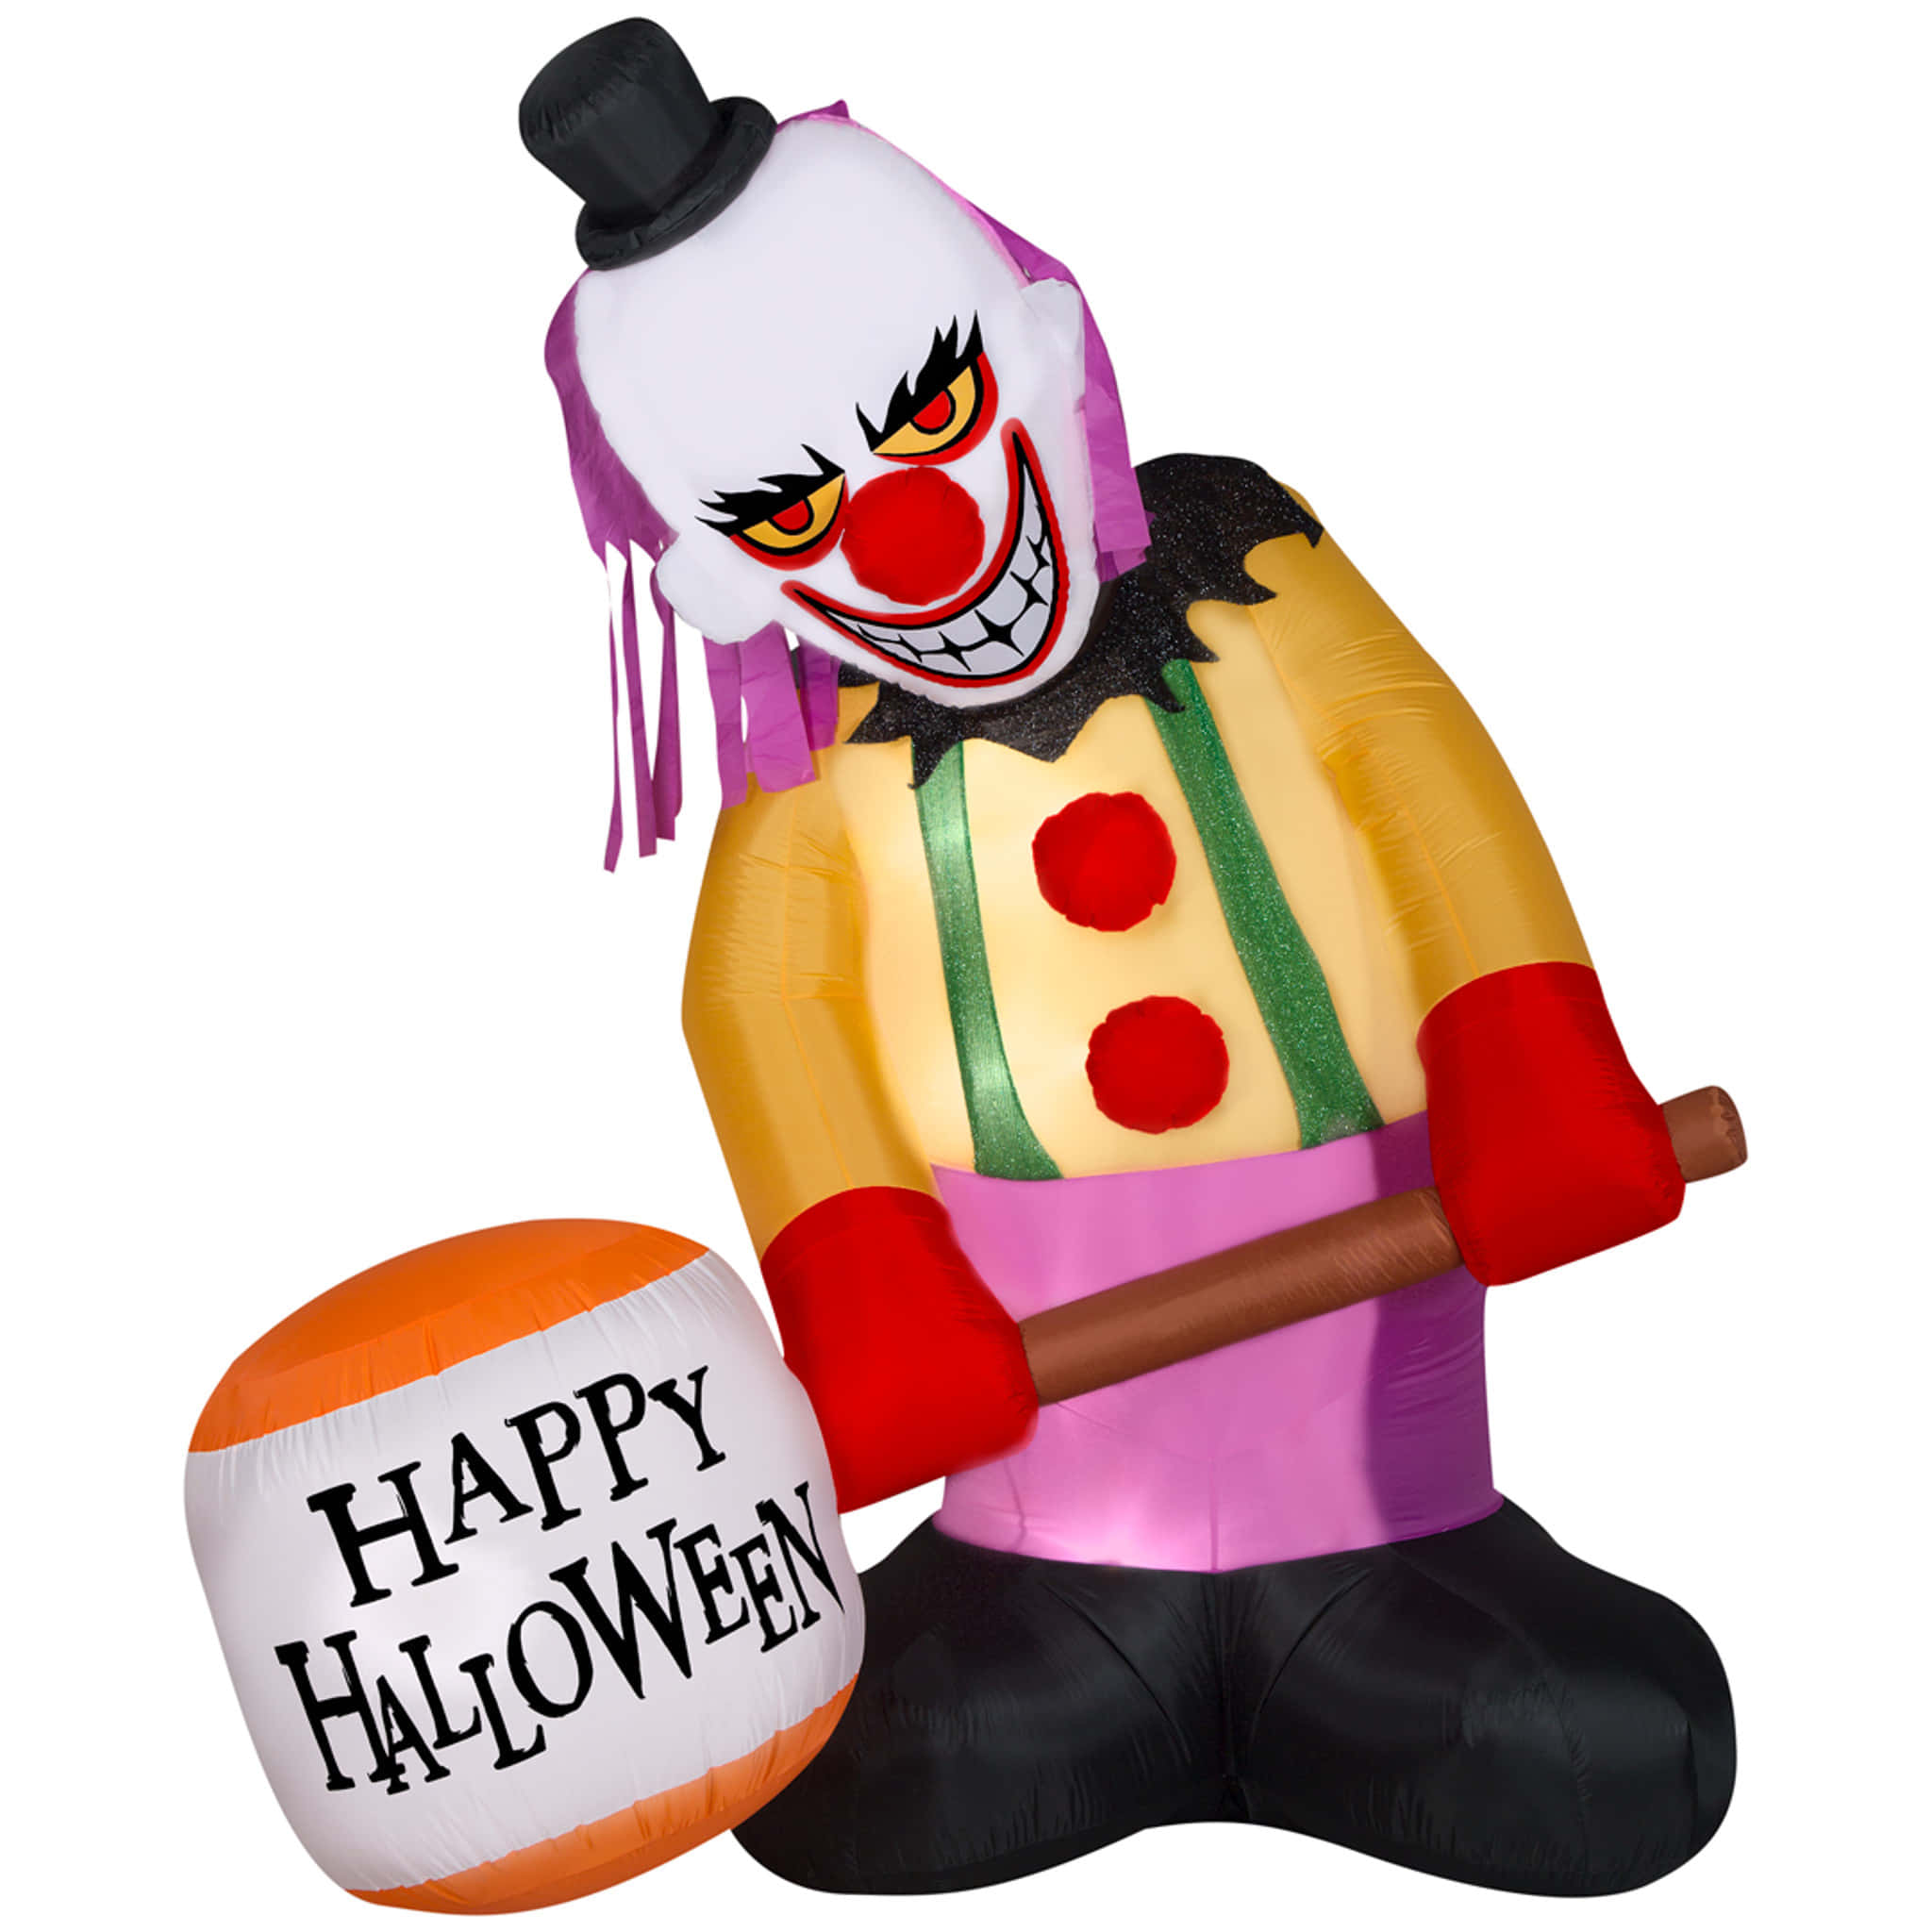 Beware the Clown!